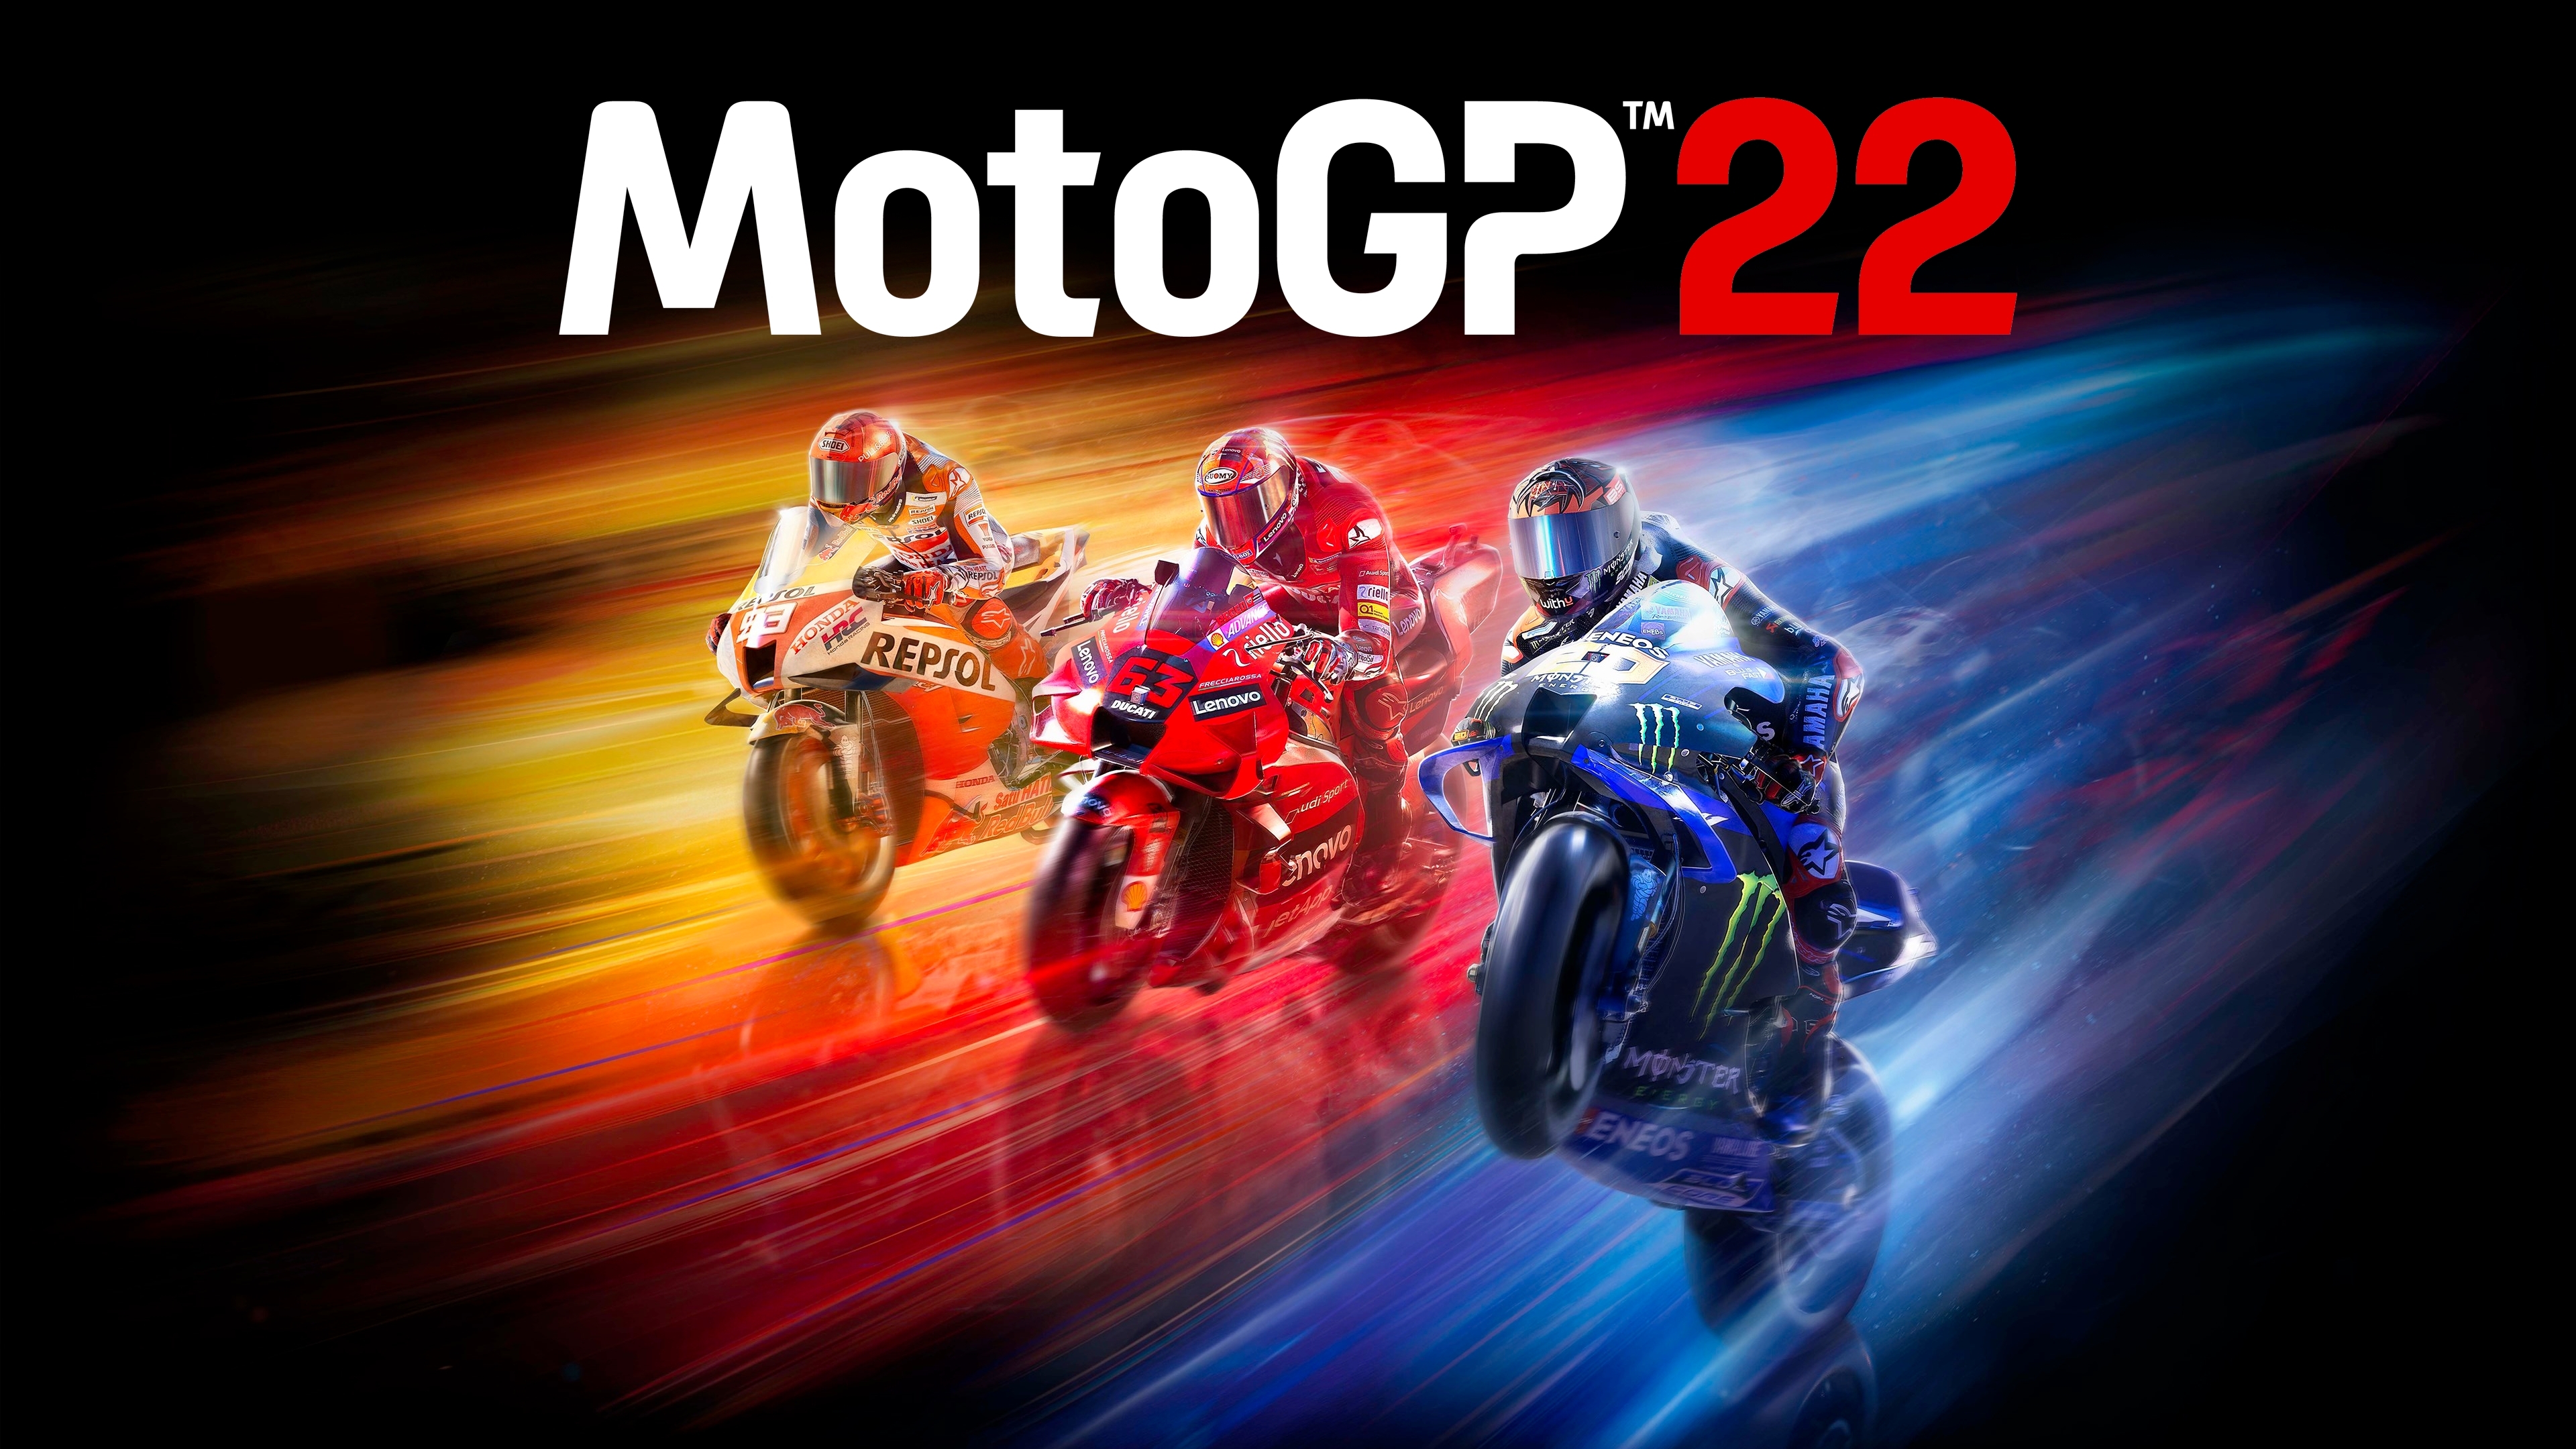 Moto Racer Simulator GT Games, Aplicações de download da Nintendo Switch, Jogos